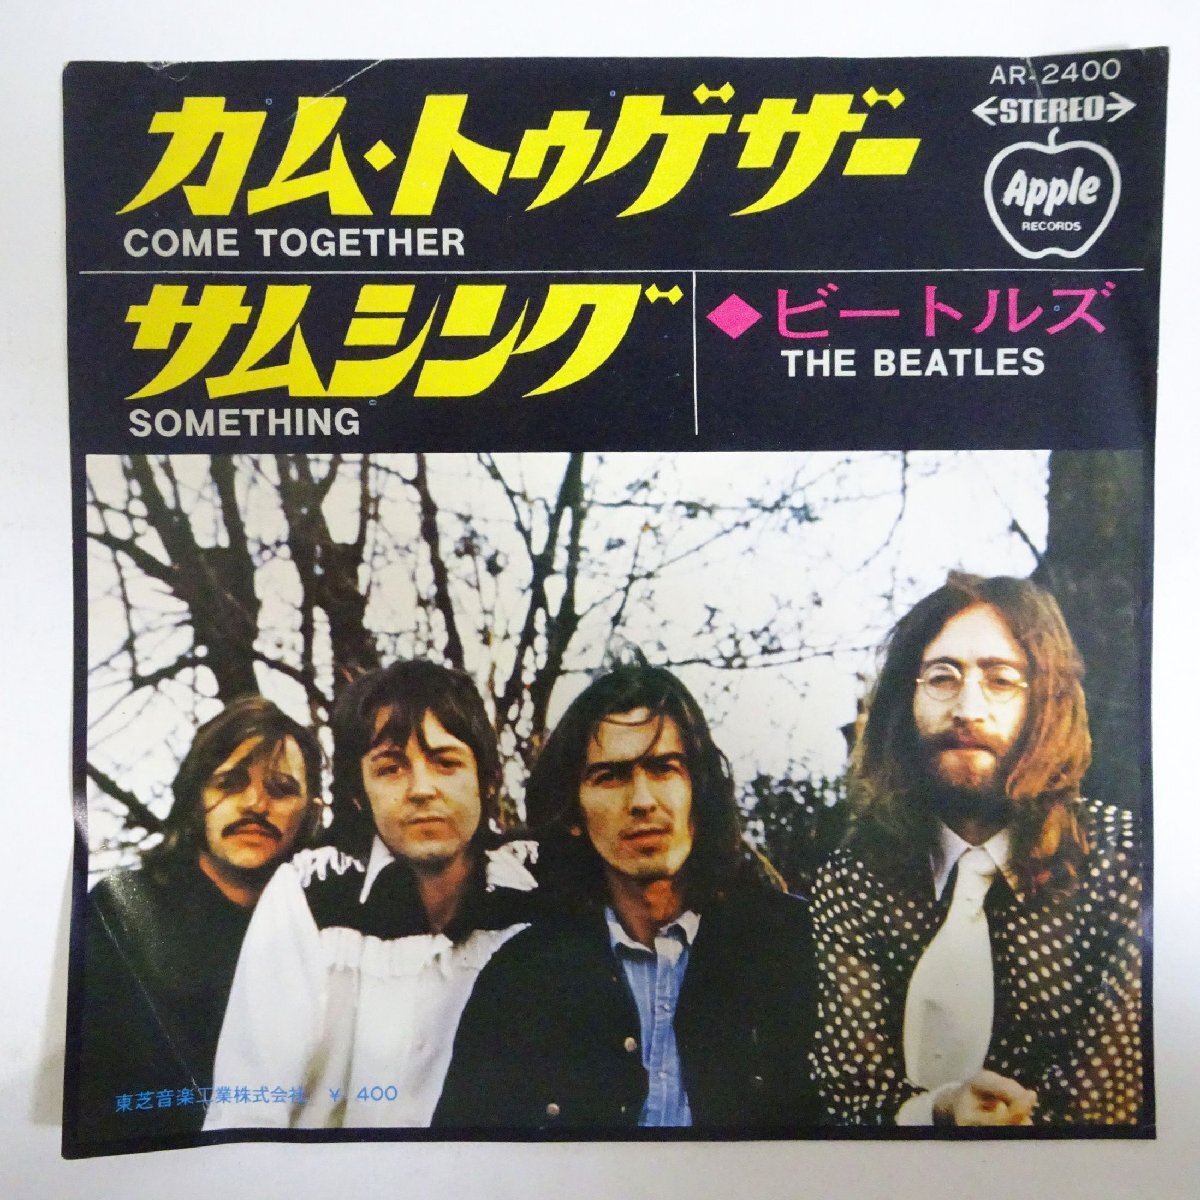 10025000;【国内盤/Apple/7inch】ビートルズ The Beatles / カム・トゥゲザー / サムシングの画像1